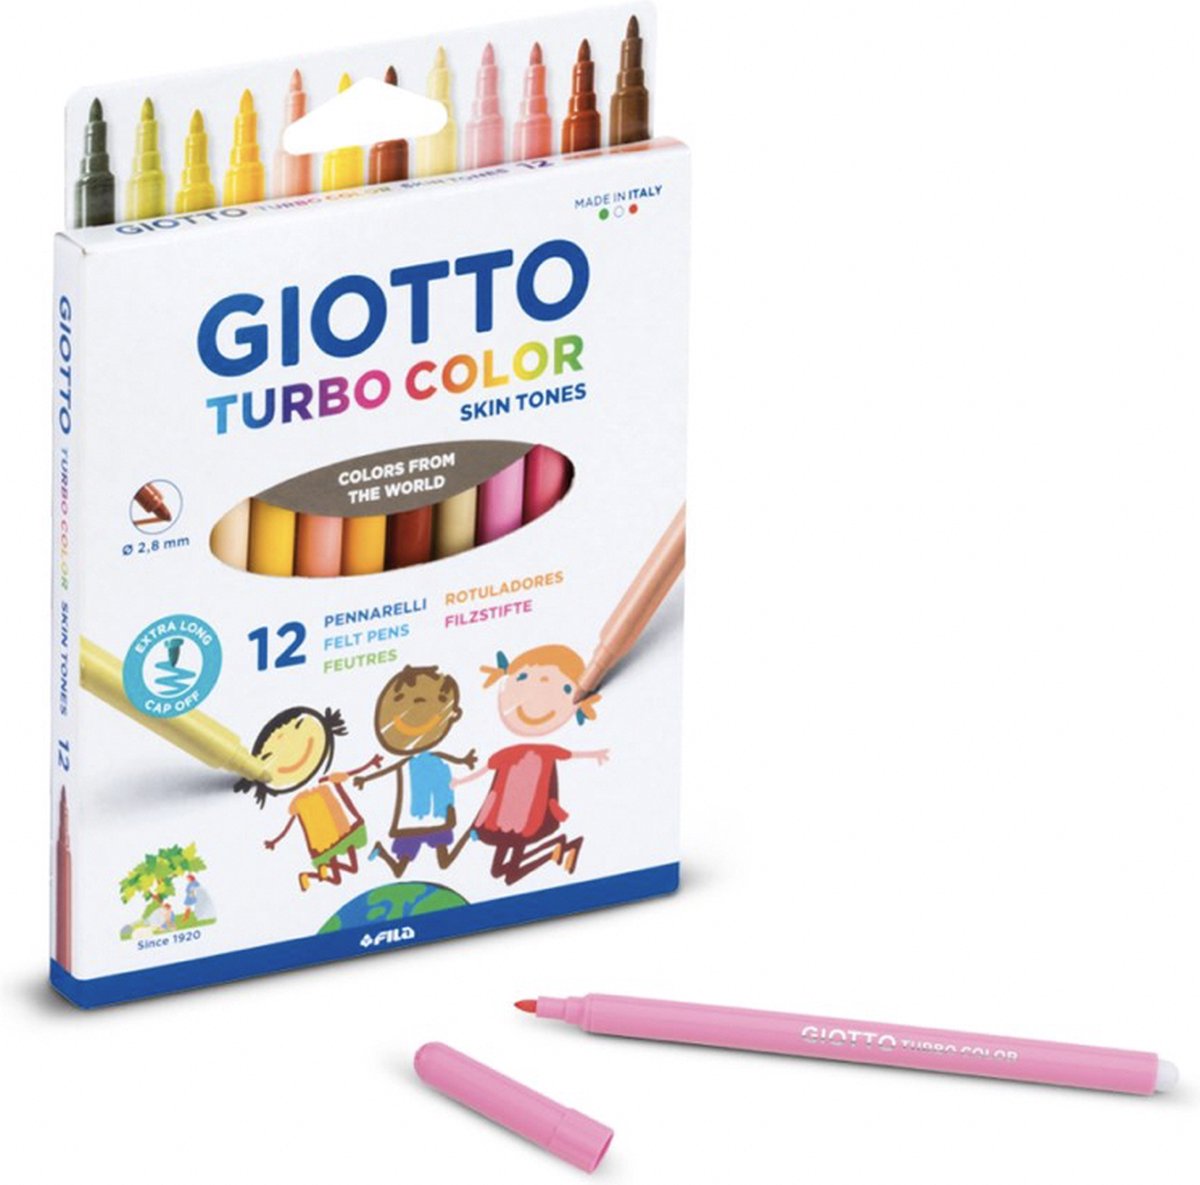 Giotto huidskleur stiften - 12 stuks - Huidskleurstiften / Skintone pencils / Turbo Color stiften